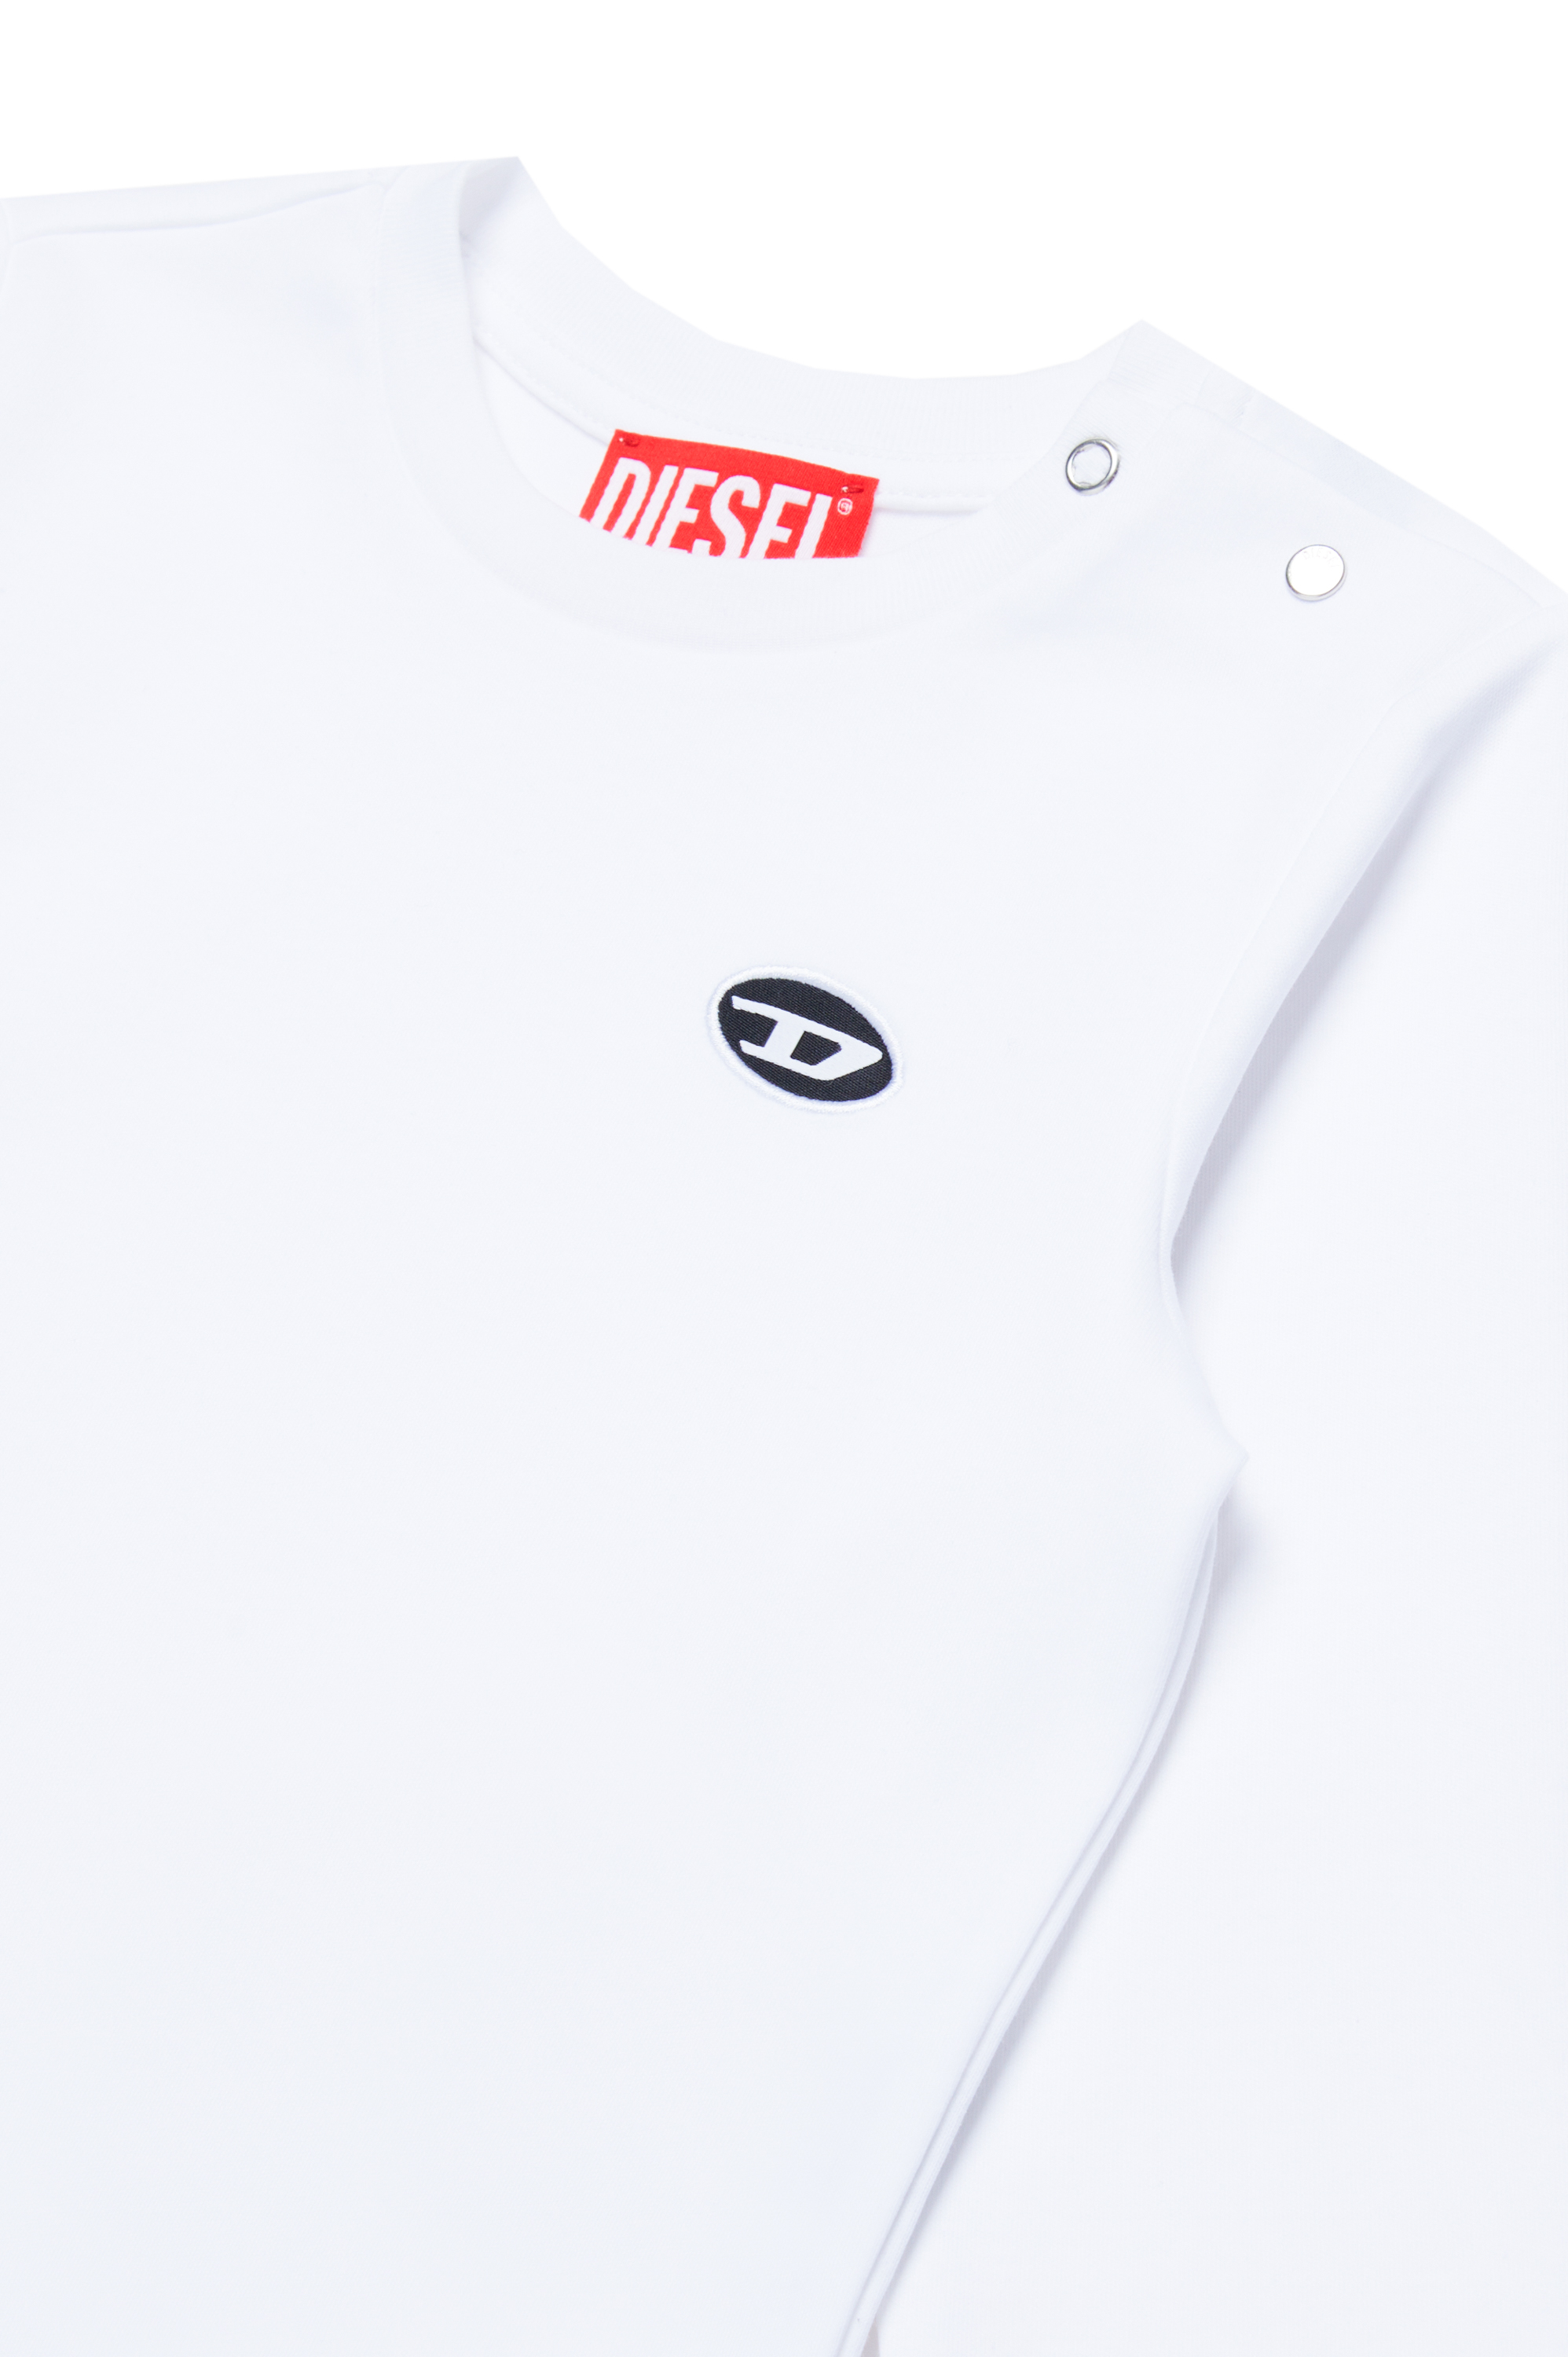 Diesel - TJUSTDOVALPJLSB, Homme T-shirt à manches longues en coton bio in Blanc - Image 3